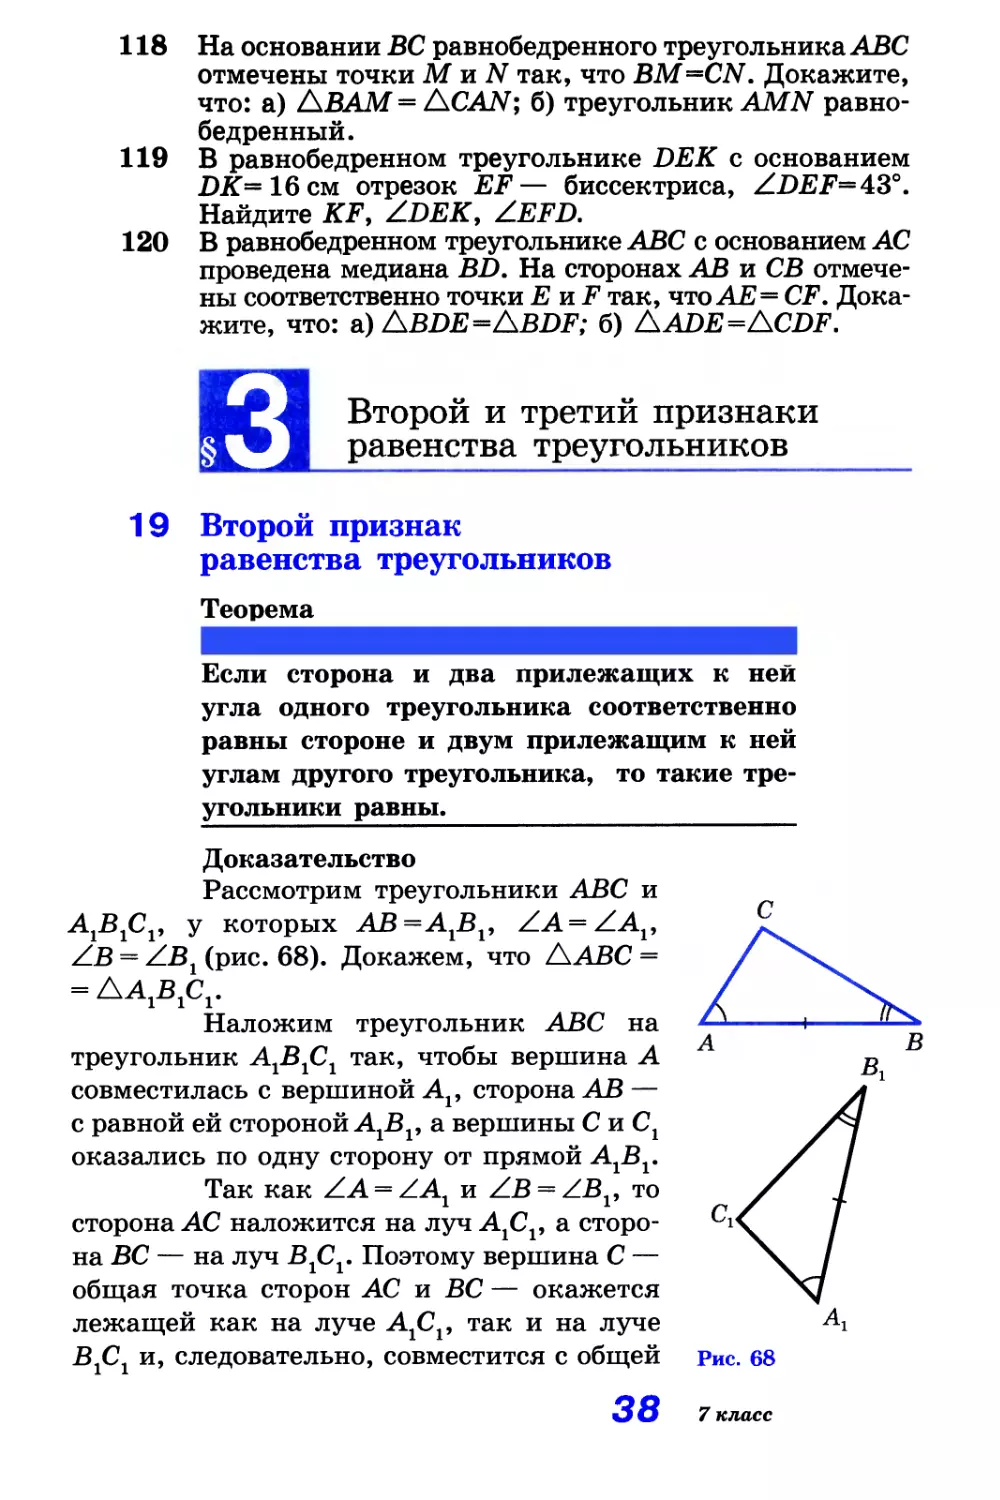 Задачи
§ 3. Второй и третий признаки равенства треугольников